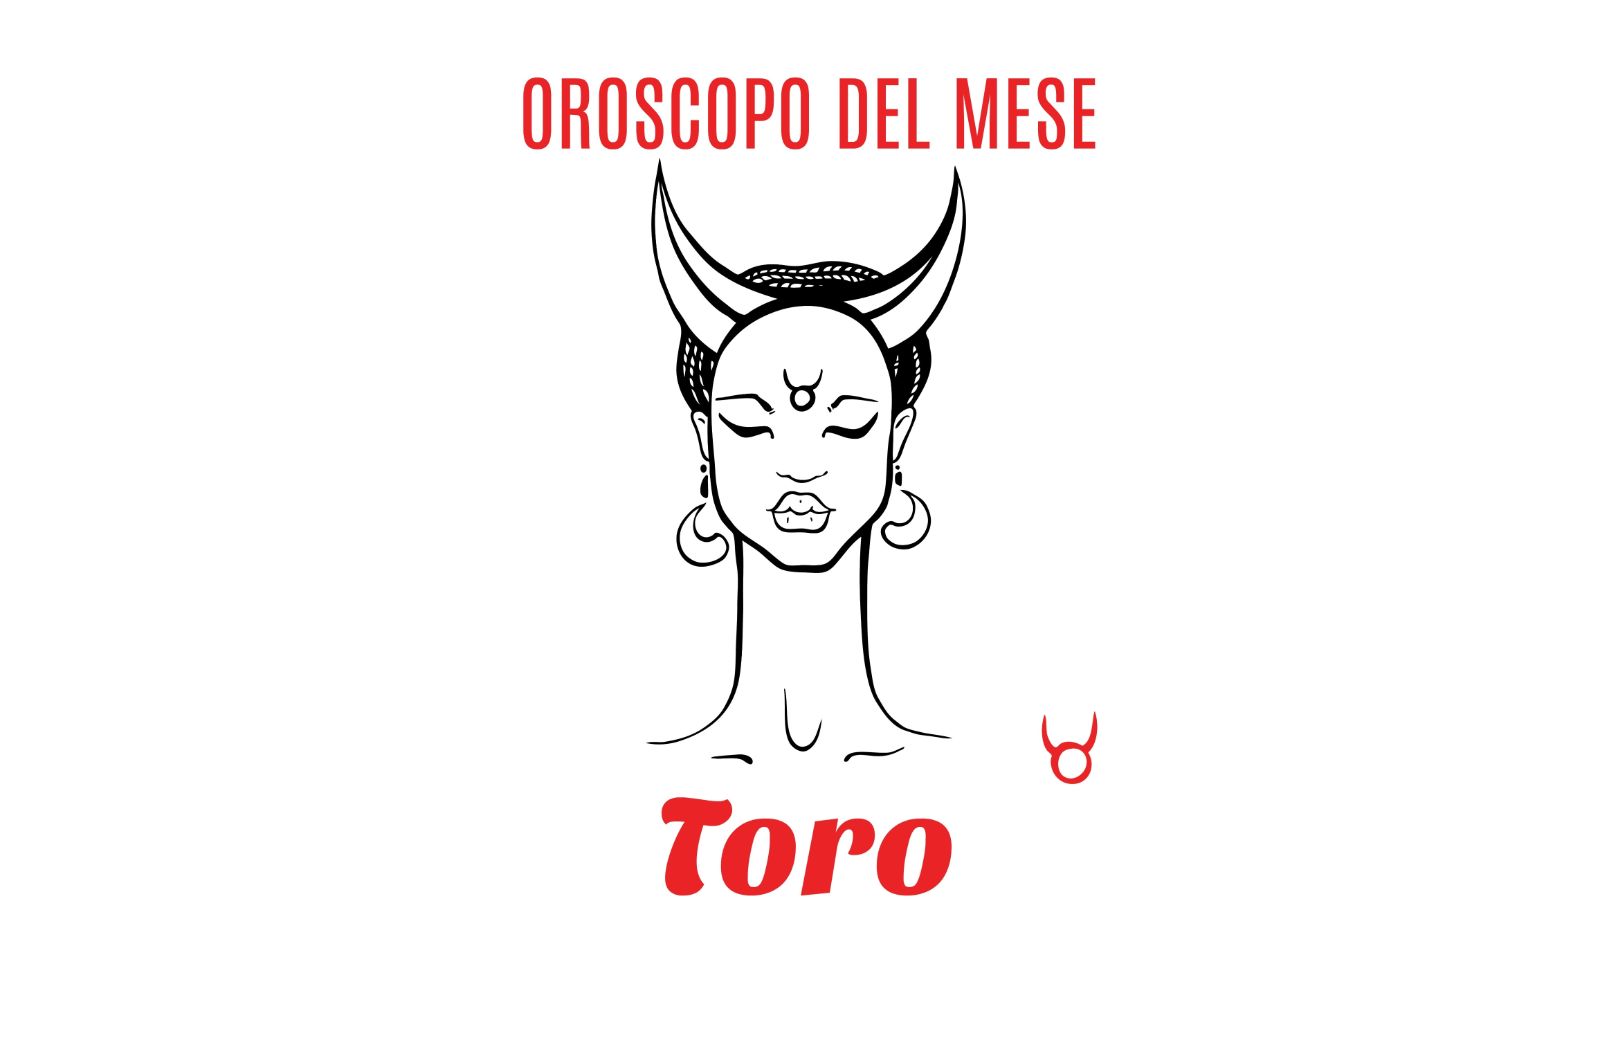 Oroscopo del mese: Toro - maggio 2018